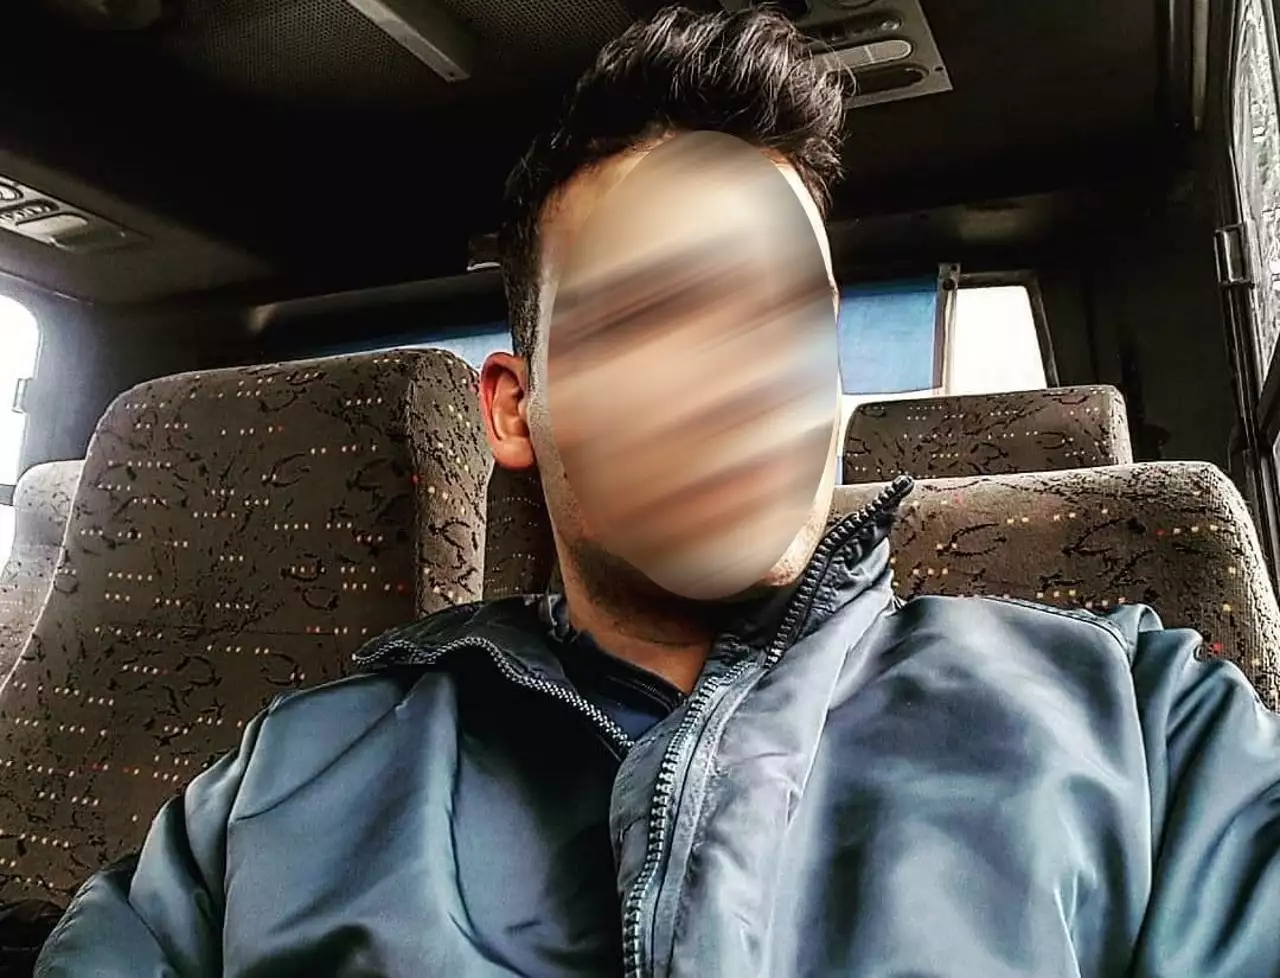 Τροχαίο στην λεωφόρο Μεσογείων: Θρήνος για τον 28χρονο Αντρέα – Έτρεχε για να προλάβει το λεωφορείο (φωτο, video)